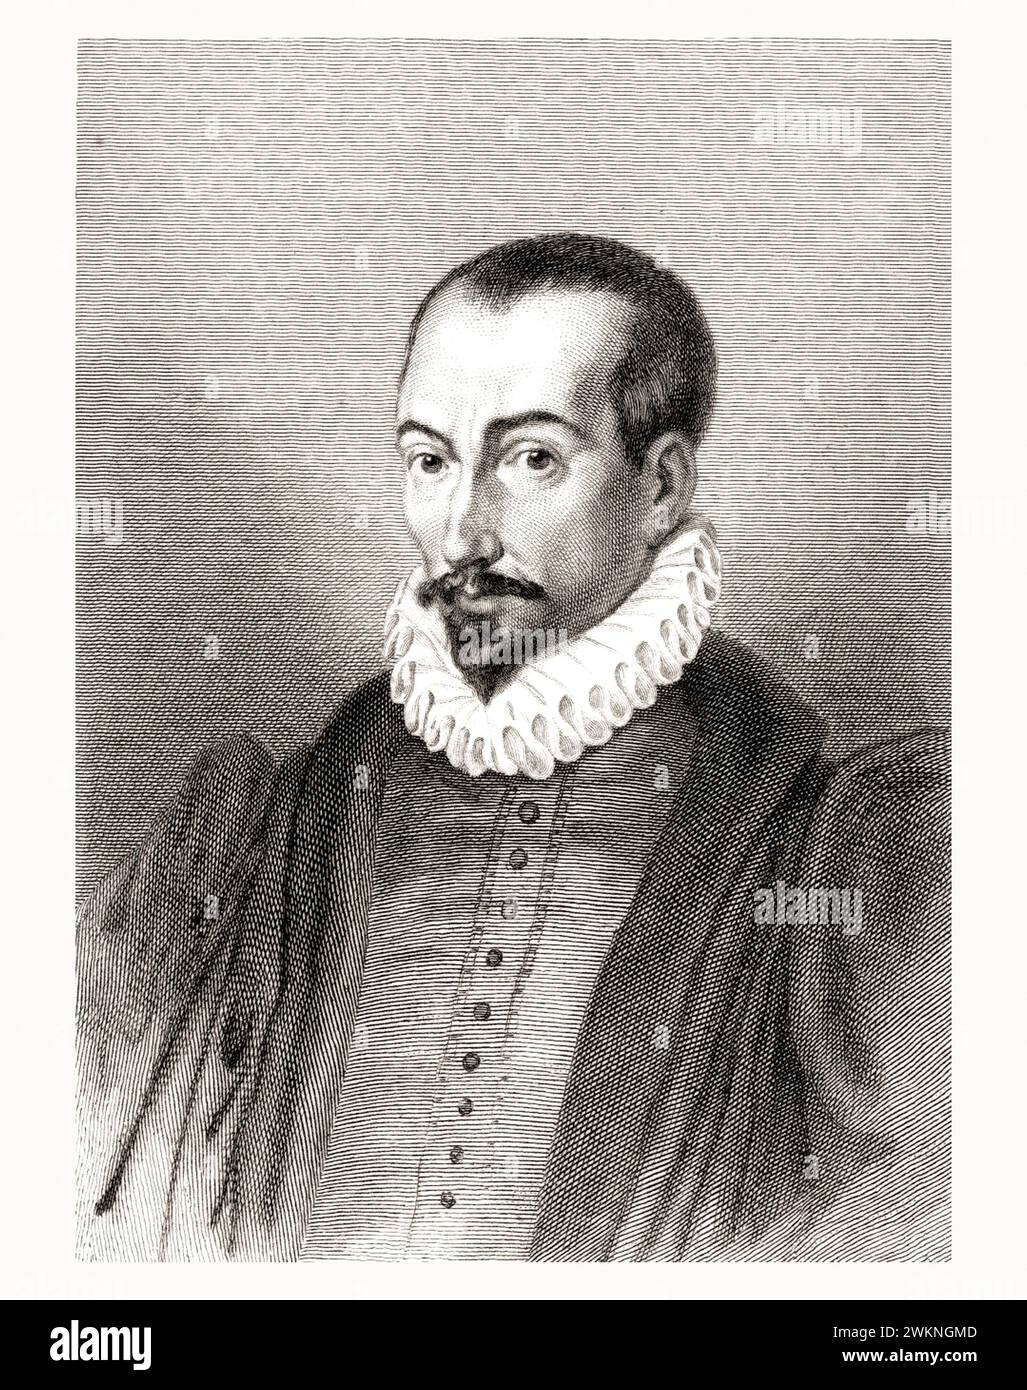 1585 c., FRANCIA: Il giurista, storico e scrittore italiano PIERRE PITHOU ( 1539-1596 ). Ritratto inciso da Gavard , pubblicato nel 1839 . - STORIA - FOTO STORICO - STORICO - SCRITTORE - SCRITTORE - LETTERATURA - LETTERATURA - giureconsulto - GIURISTA - LEGGE - LAY - nobili - nobiltà francese - nobiltà francese - FRANCIA - INCISIONE - INCISIONE - ILLUSTRAZIONE - colletto - colletto - colletto - colletto - colletto - GORGIERA - pizzo - pizzo - barba --- Archivio GBB Foto Stock